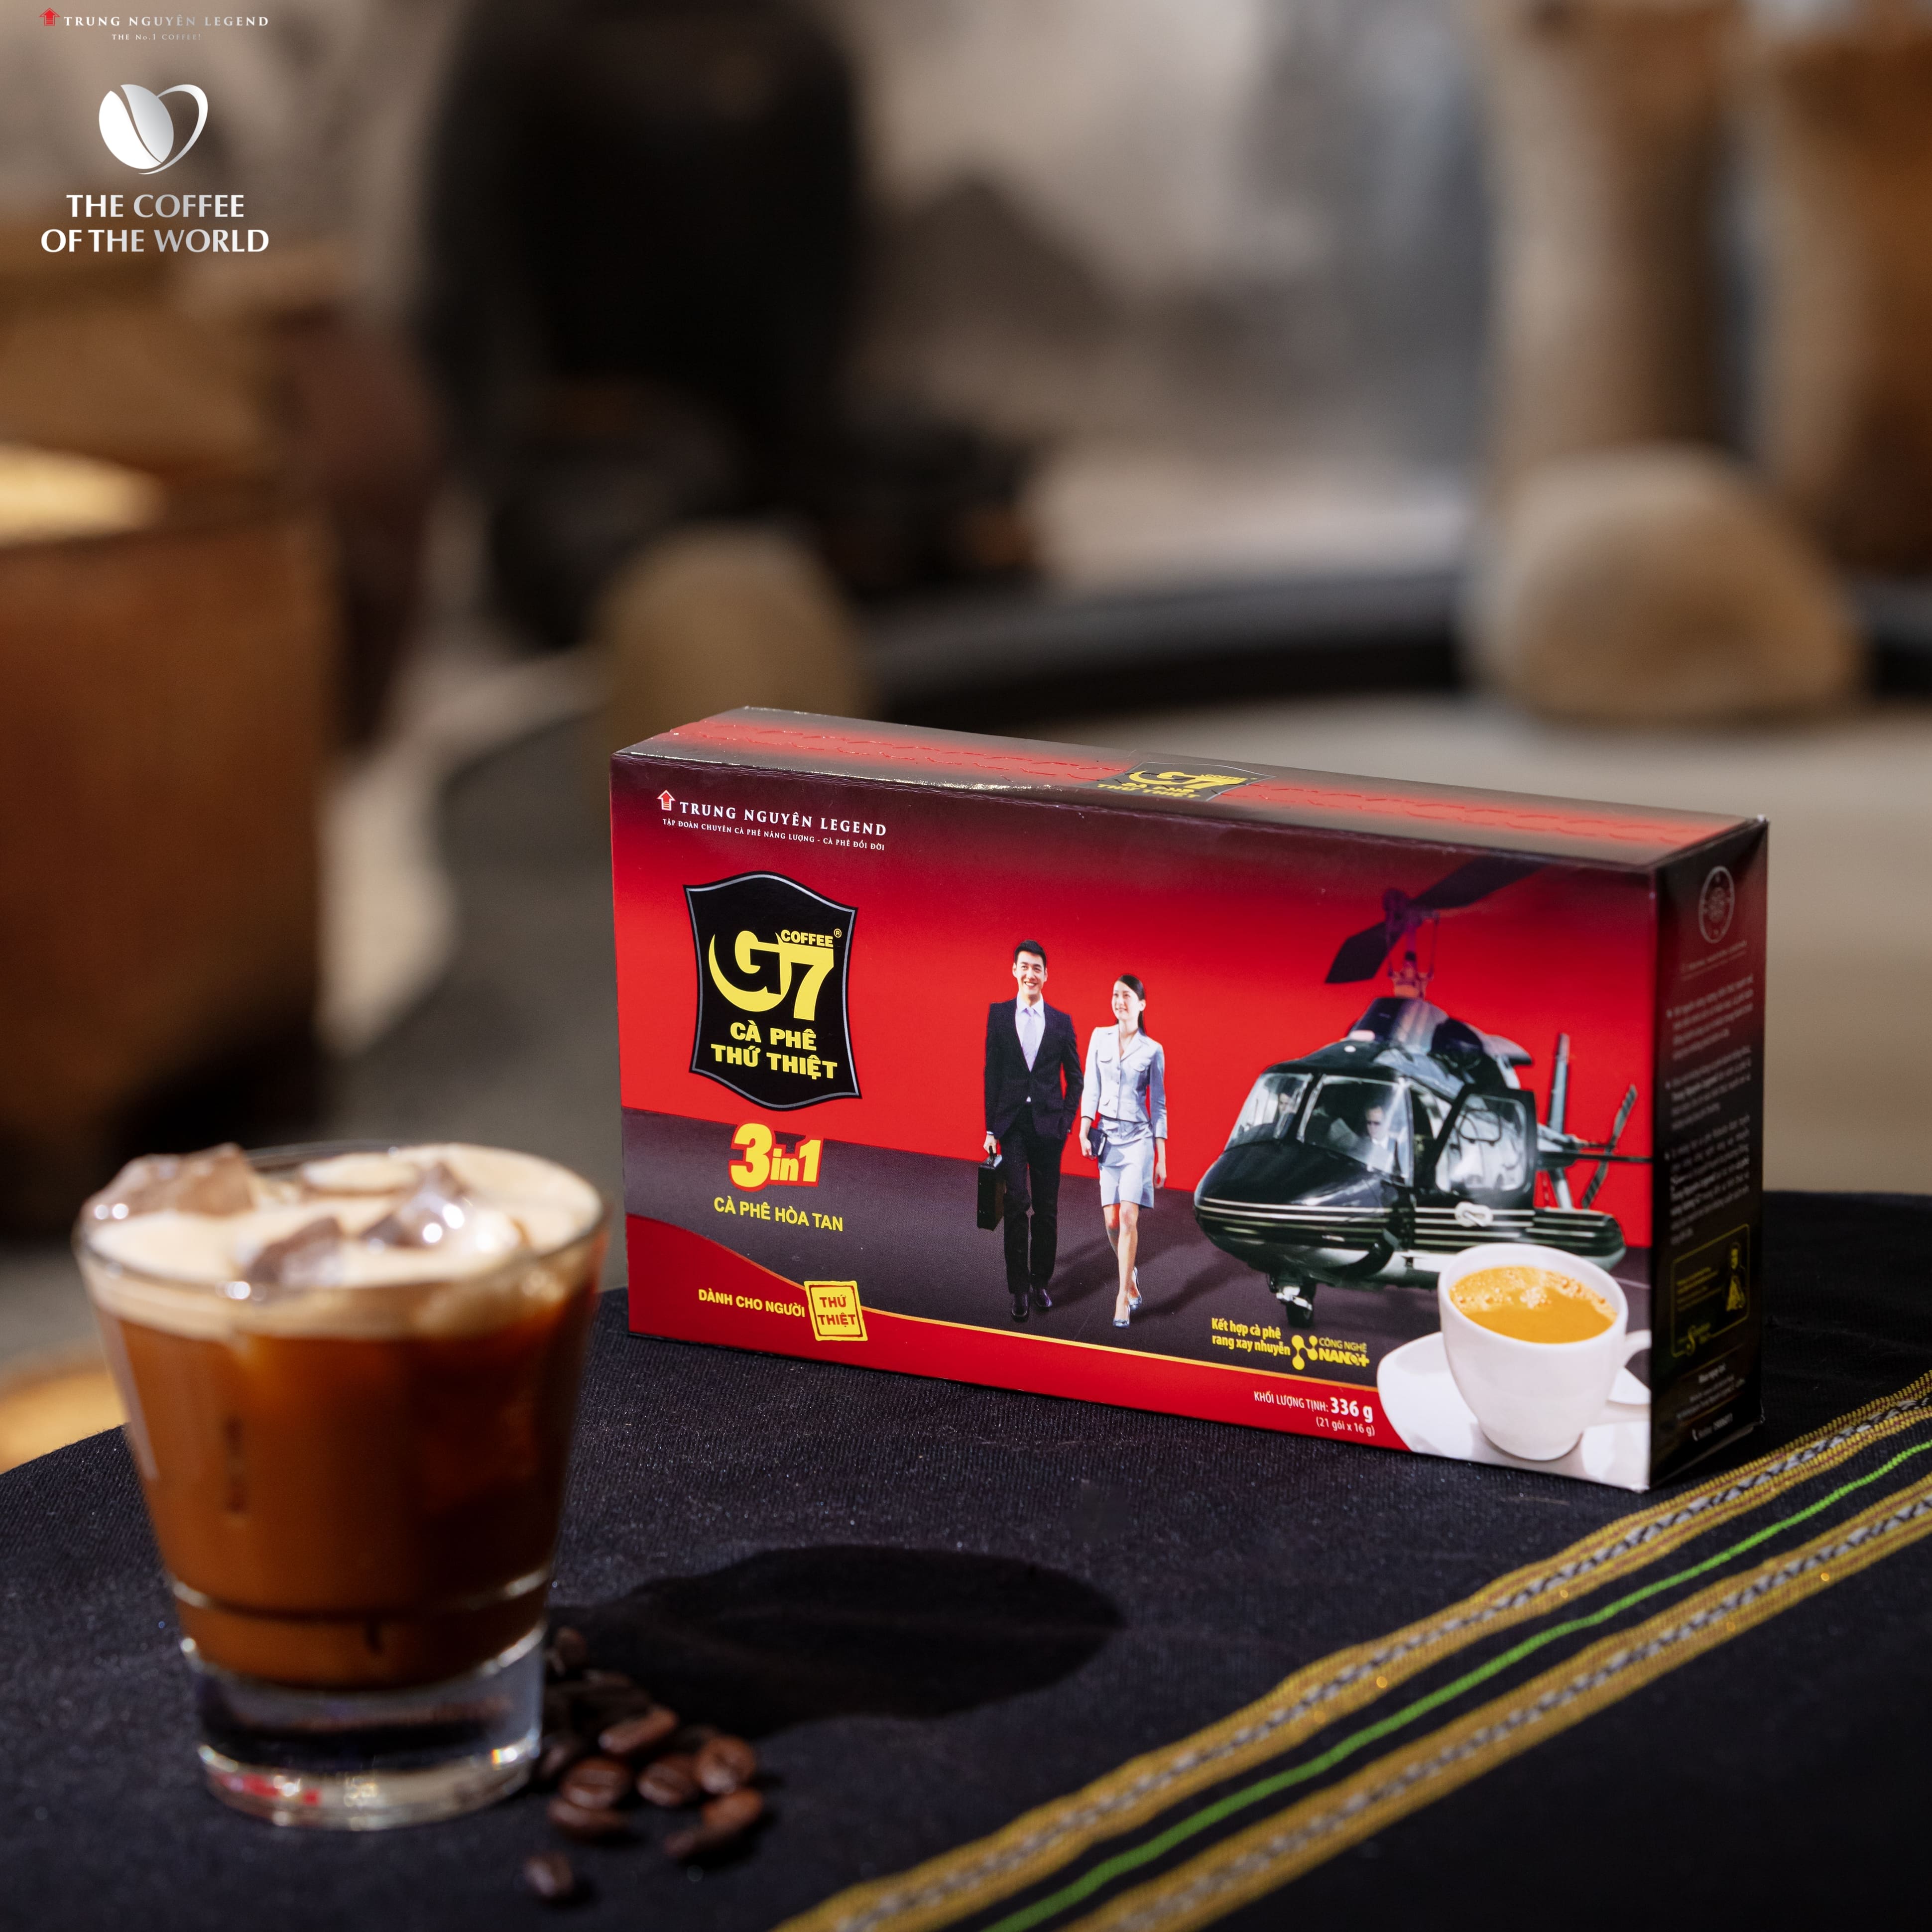 Trung Nguyên Legend - Cà phê hòa tan G7 3in1 - Hộp 21 gói x 16gr